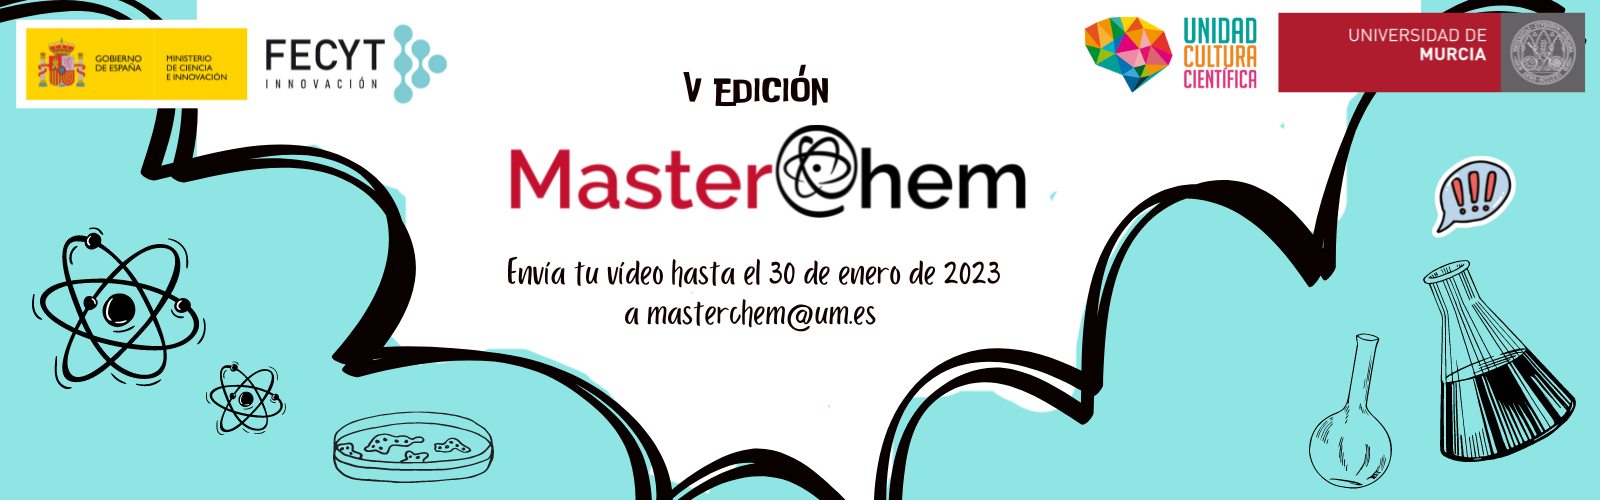 MasterChem, el concurso químico de la UMU, amplía el plazo de inscripción hasta el 30 de enero